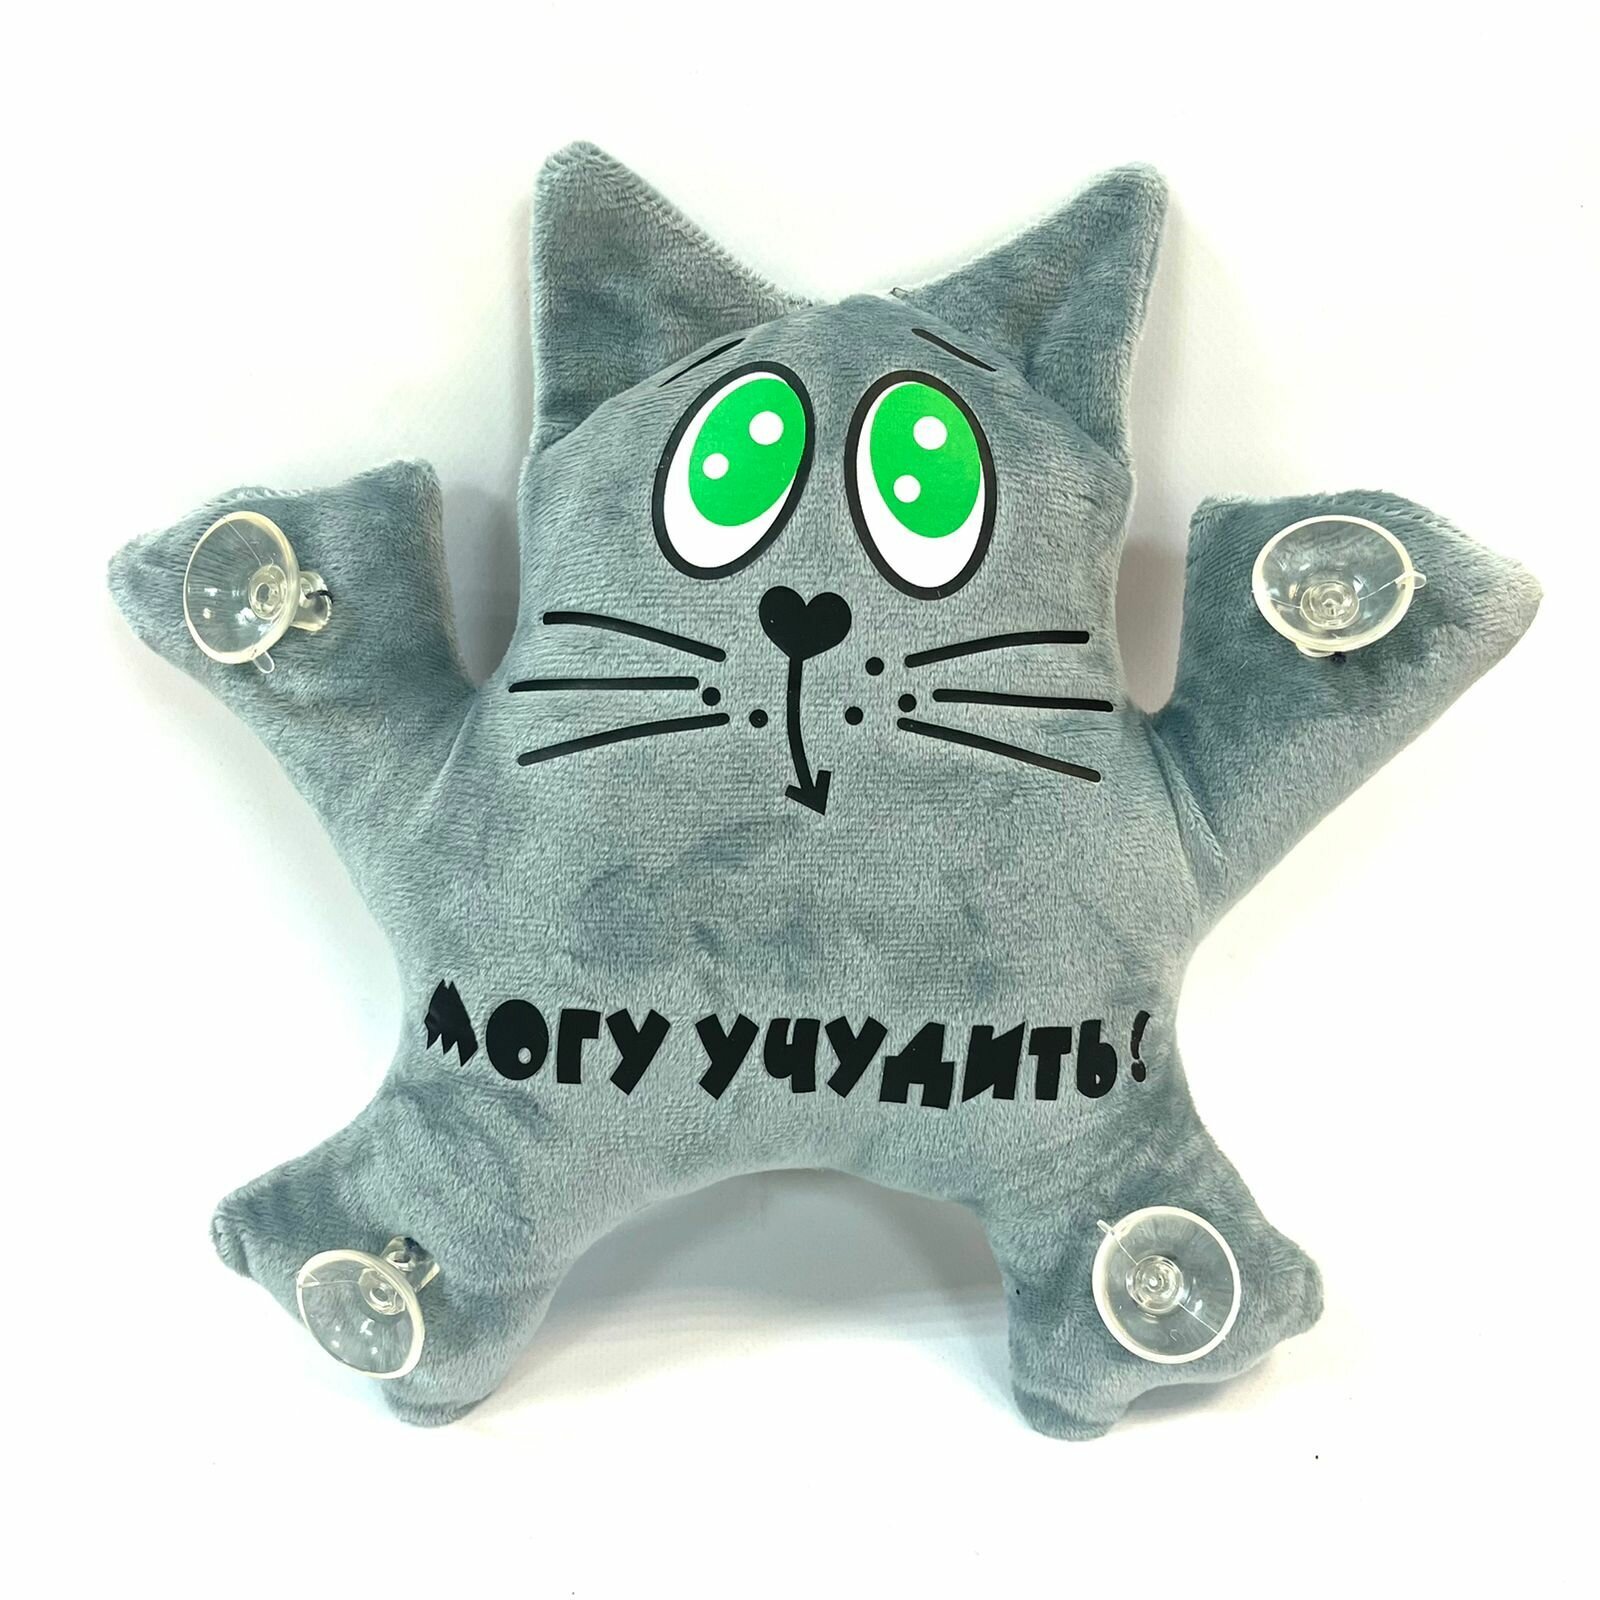 Автомобильная игрушка на присосках "Могу учудить!" серый кот